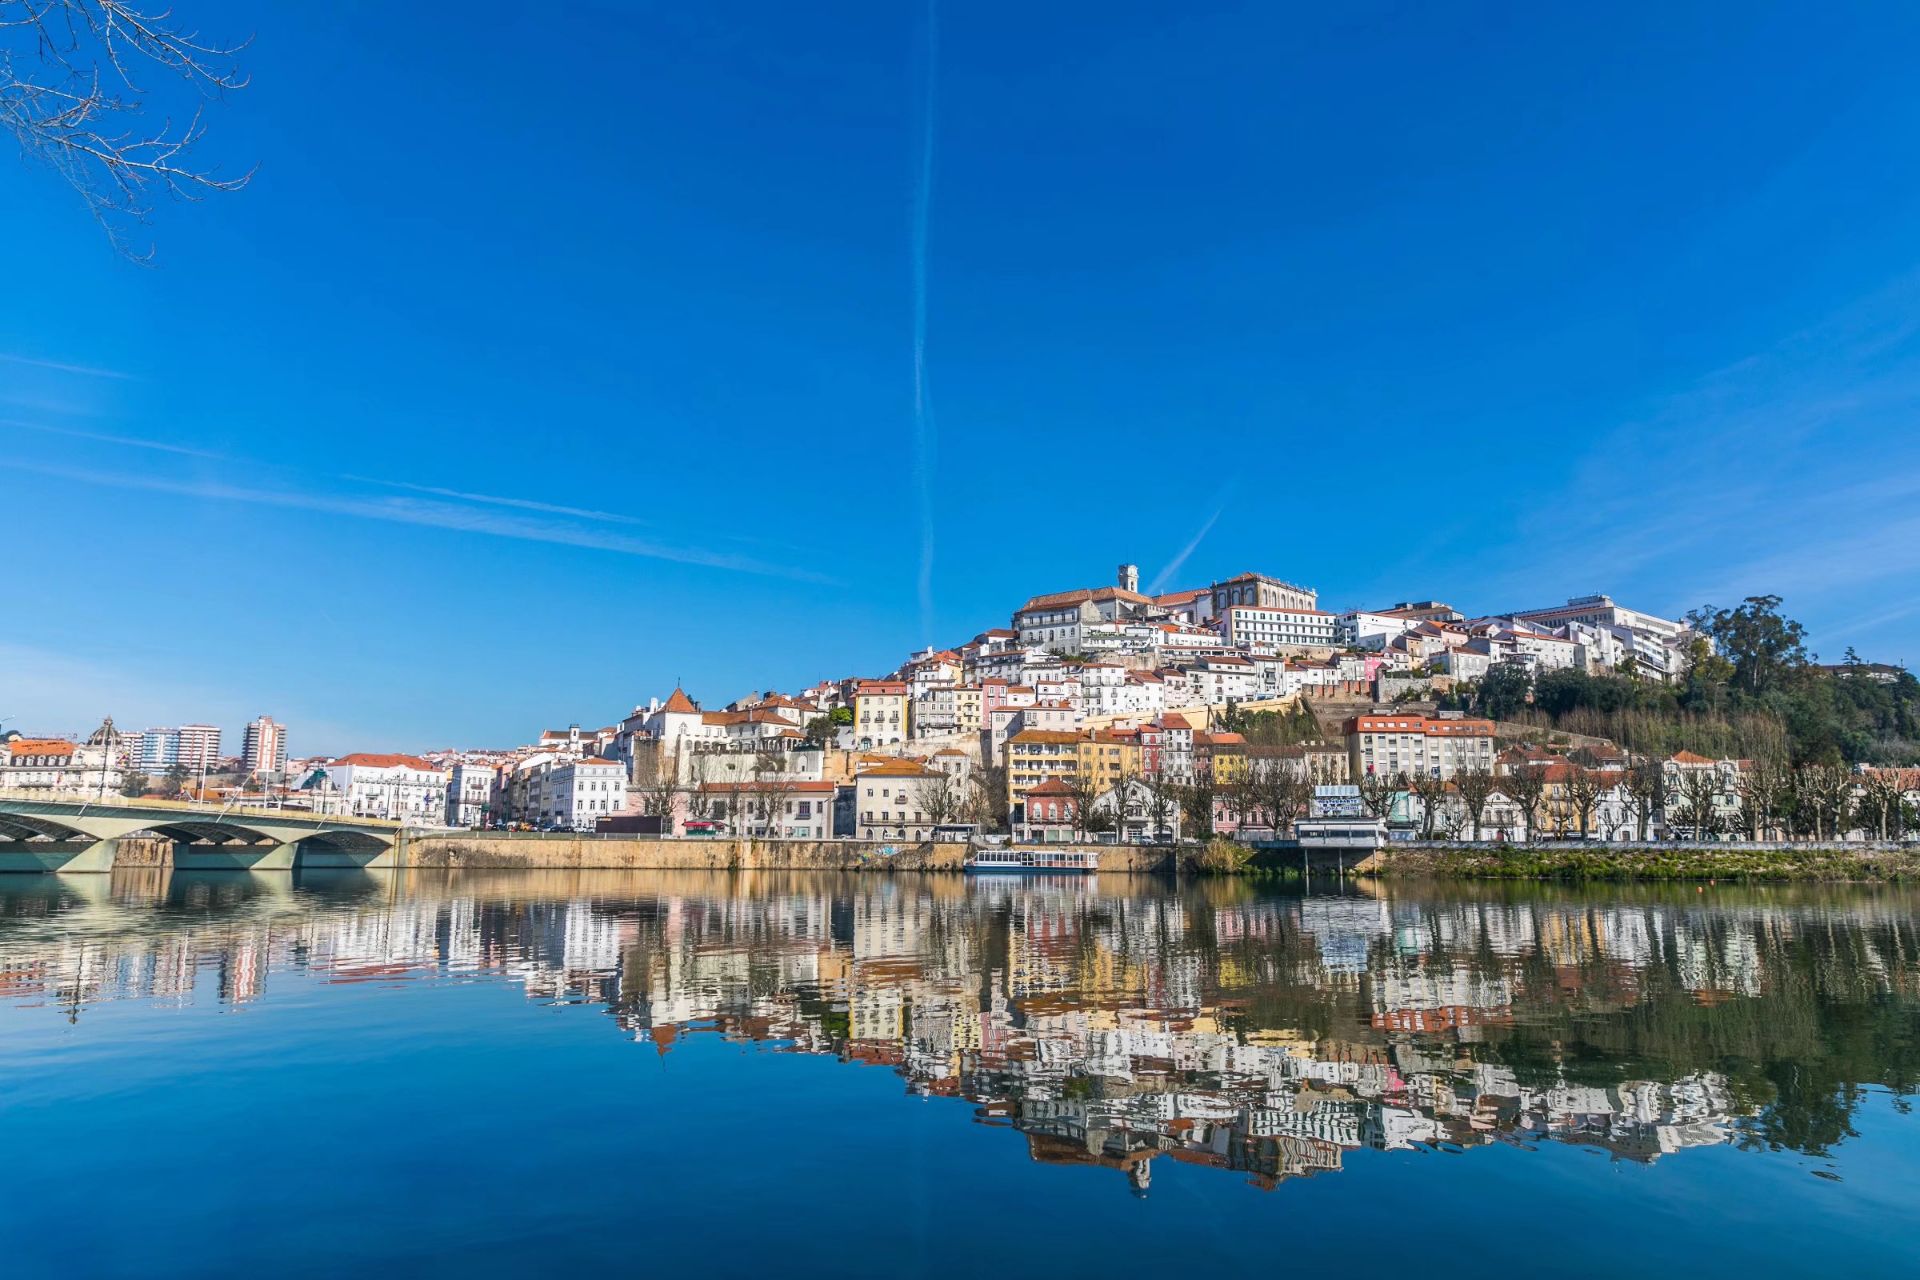 科英布拉,整座城都是世界文化遗产的宝藏旅行地 作为葡萄牙的第三个主城，科英布拉绝对是被低估的美丽山城